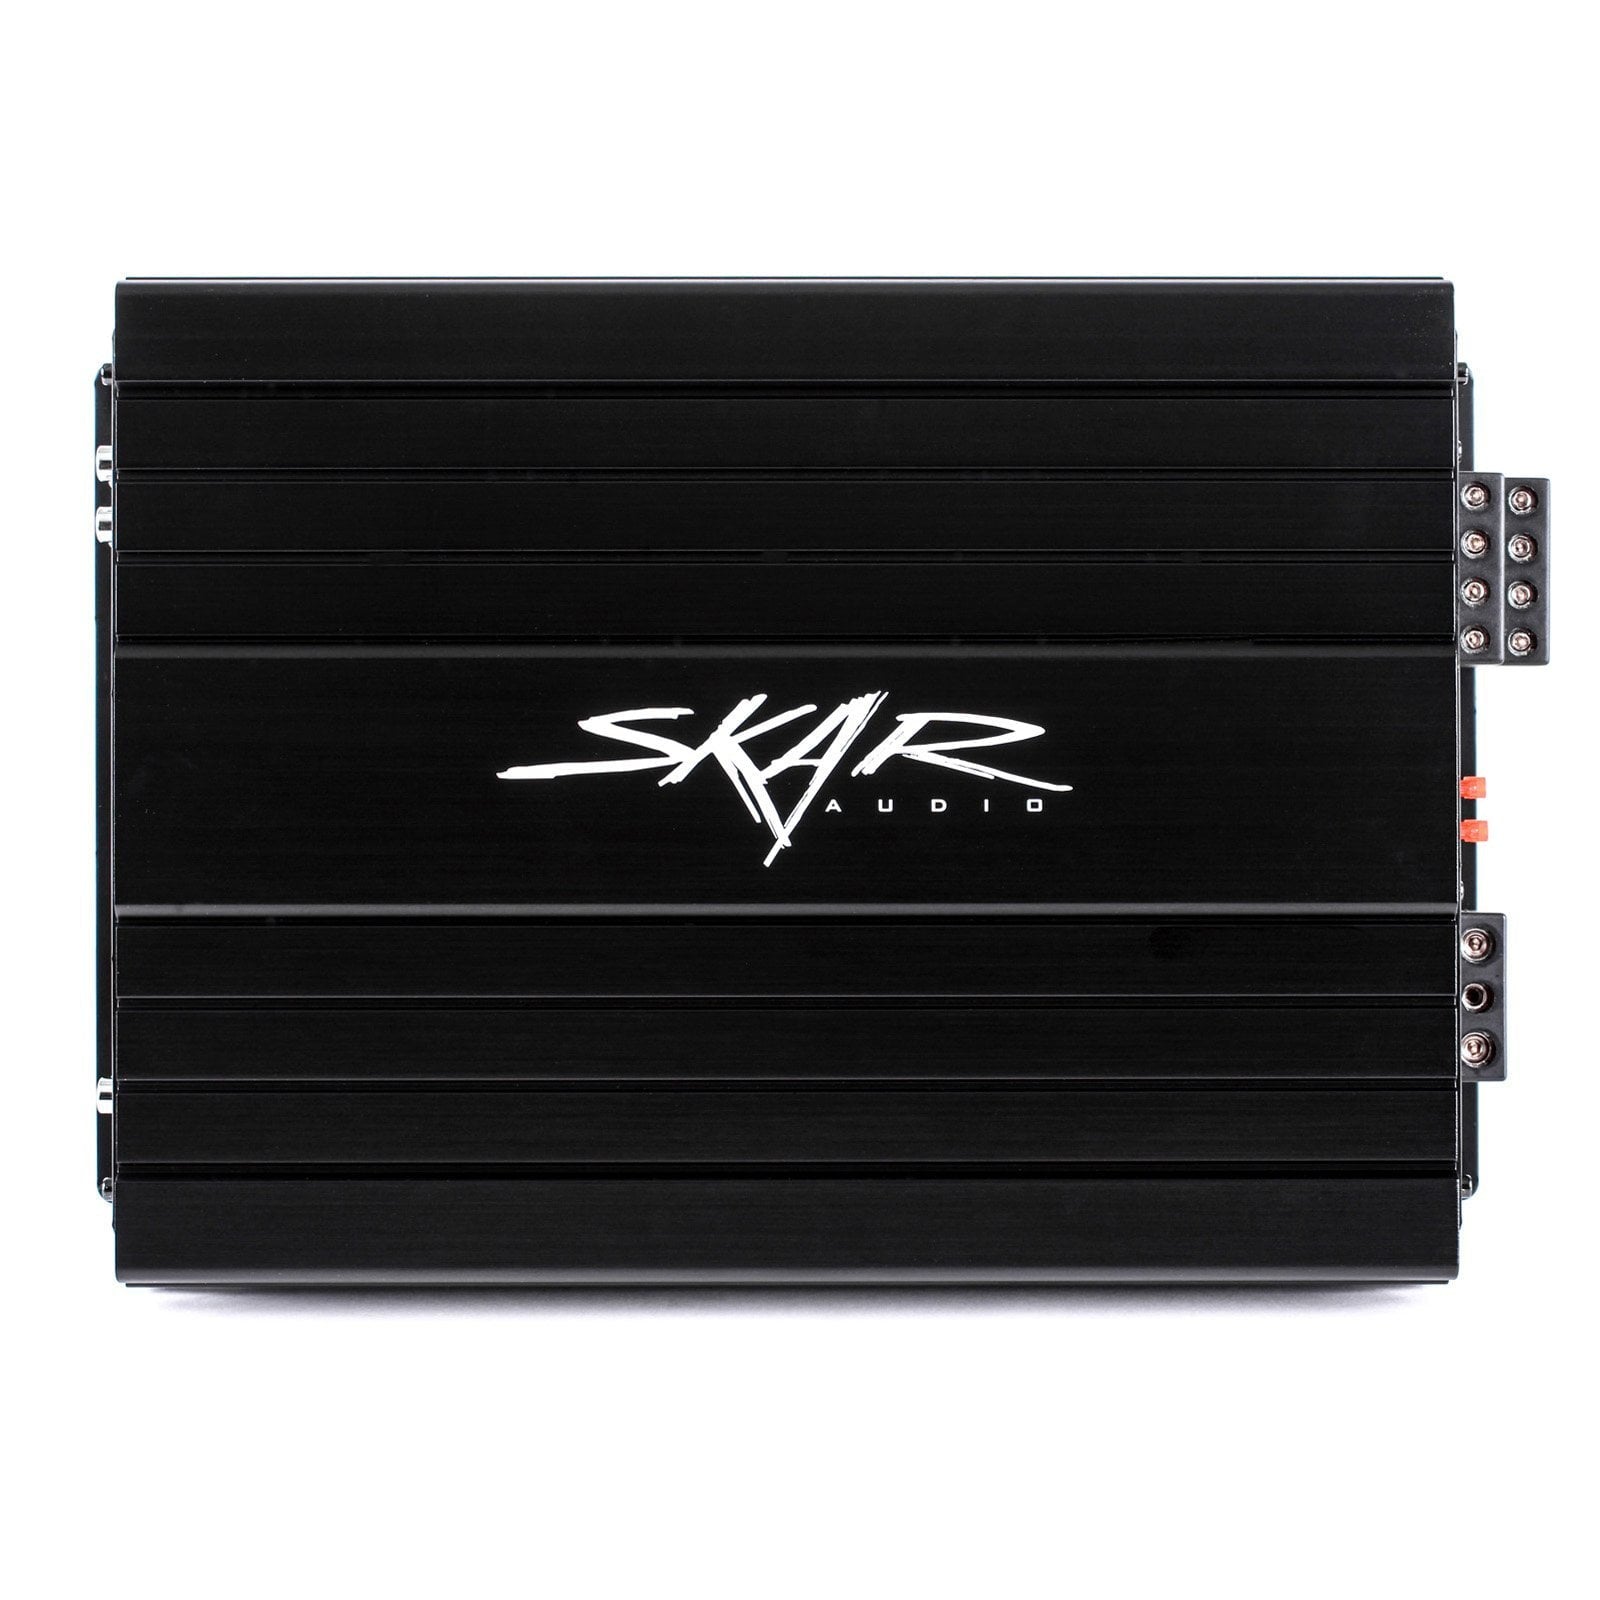 Skar Audio SKv2-200.4D 1,600 Watt Class D 4-Channel Car Amplifier - Front View